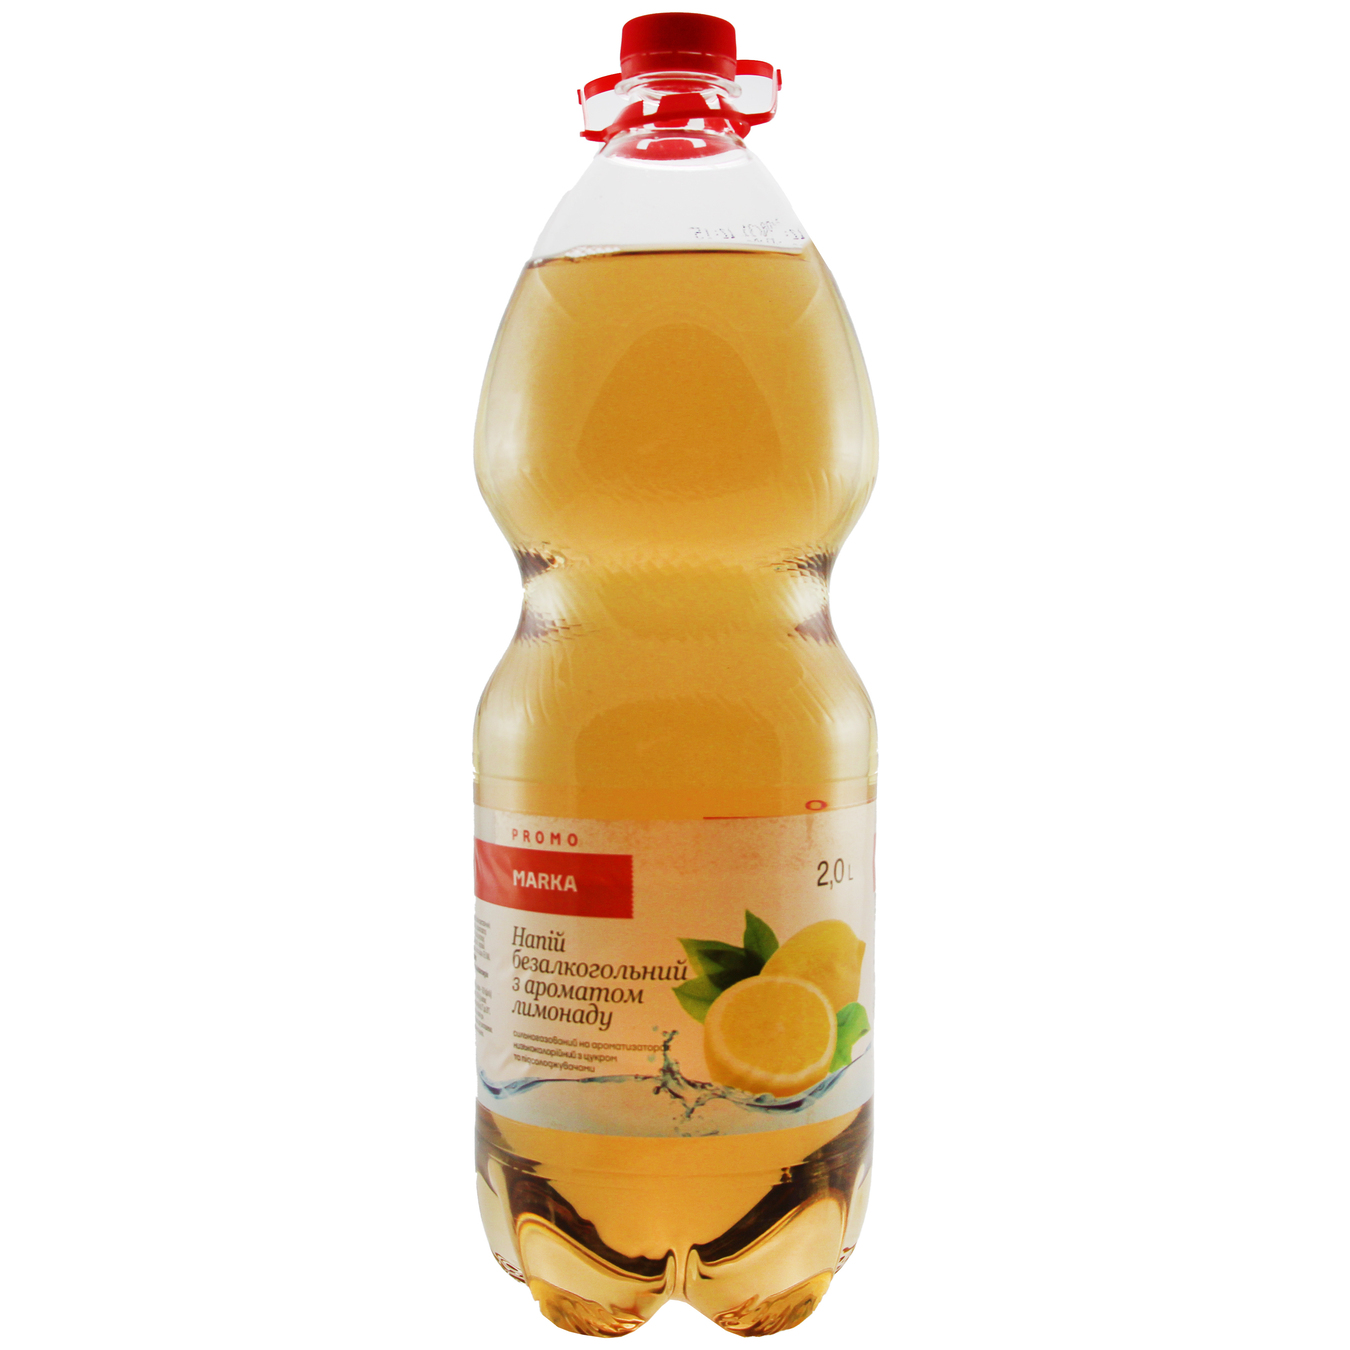 Marka Promo Lemonade Carbonated Drink 2l